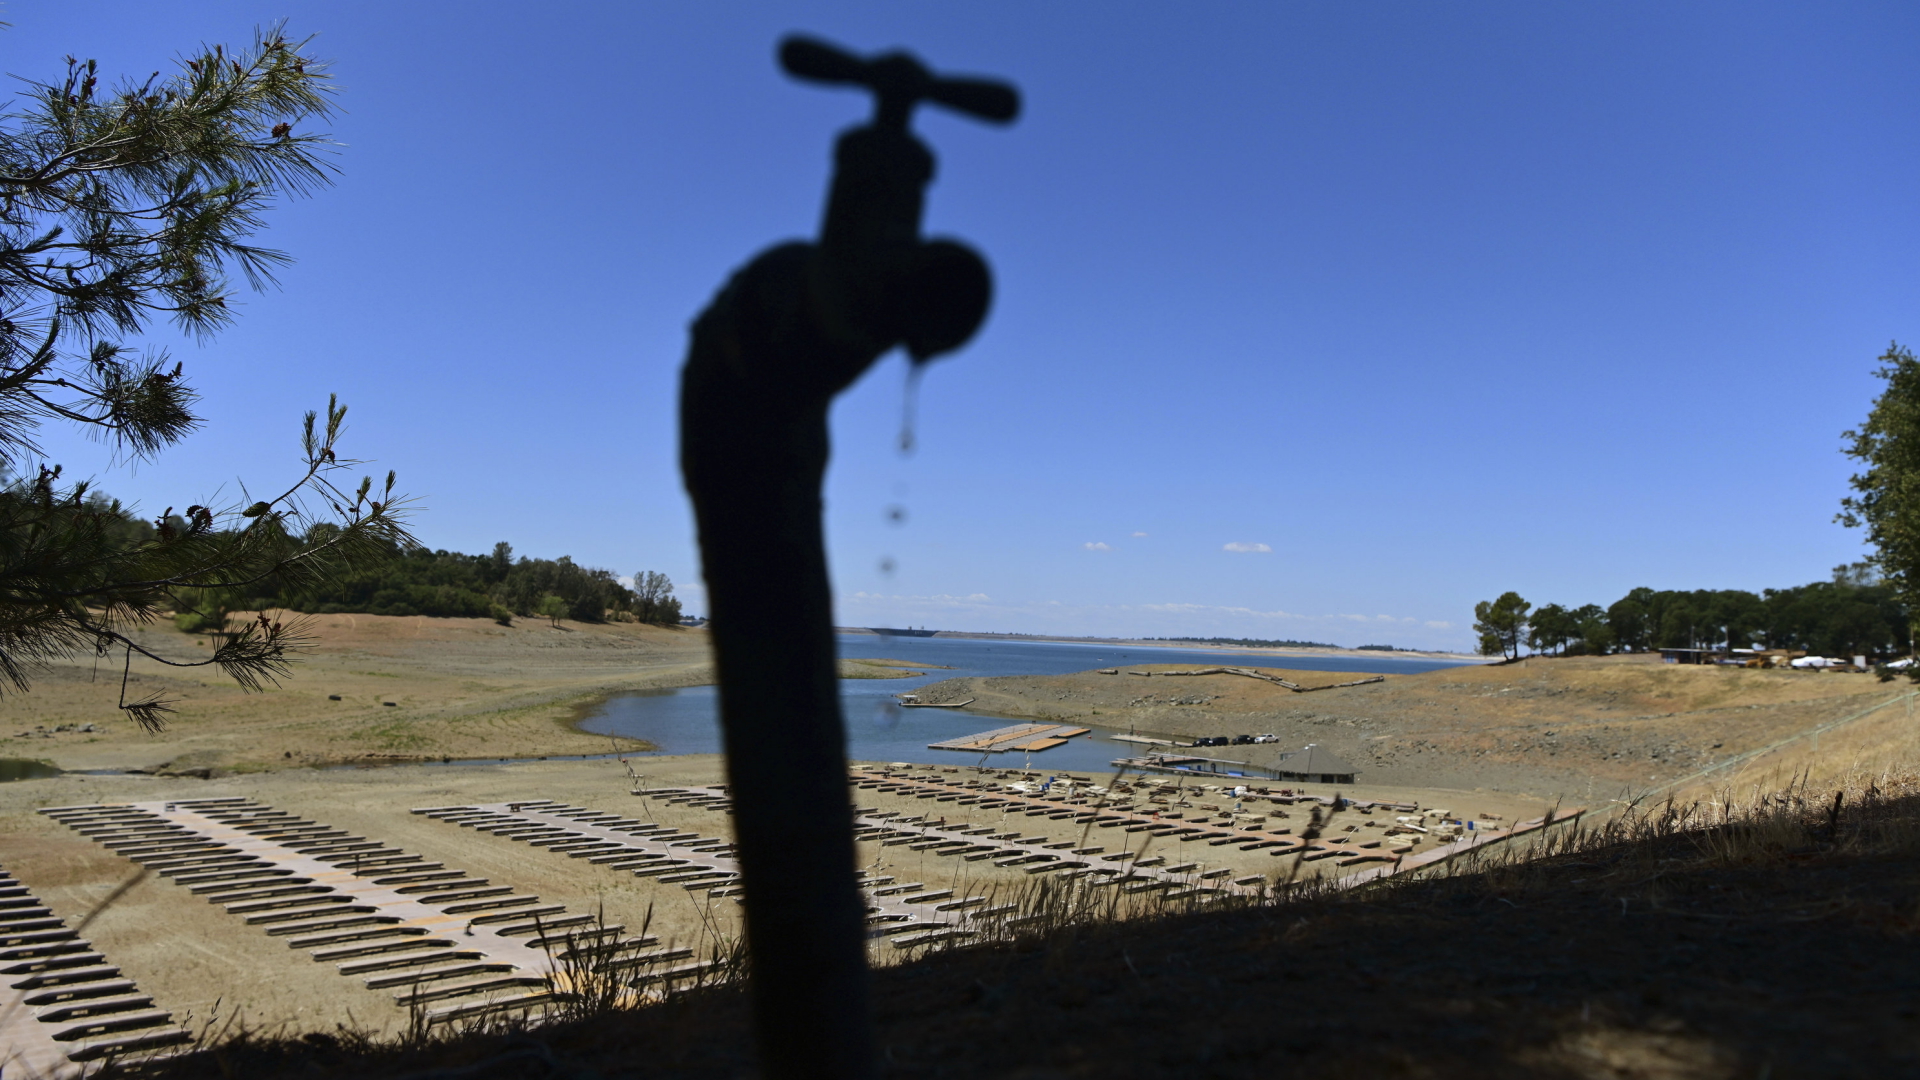 Wasser tropft aus einem Wasserhahn nahe dem Folsom-See in Kalifornien, der deutlich weniger Wasser führt als normalerweise.  